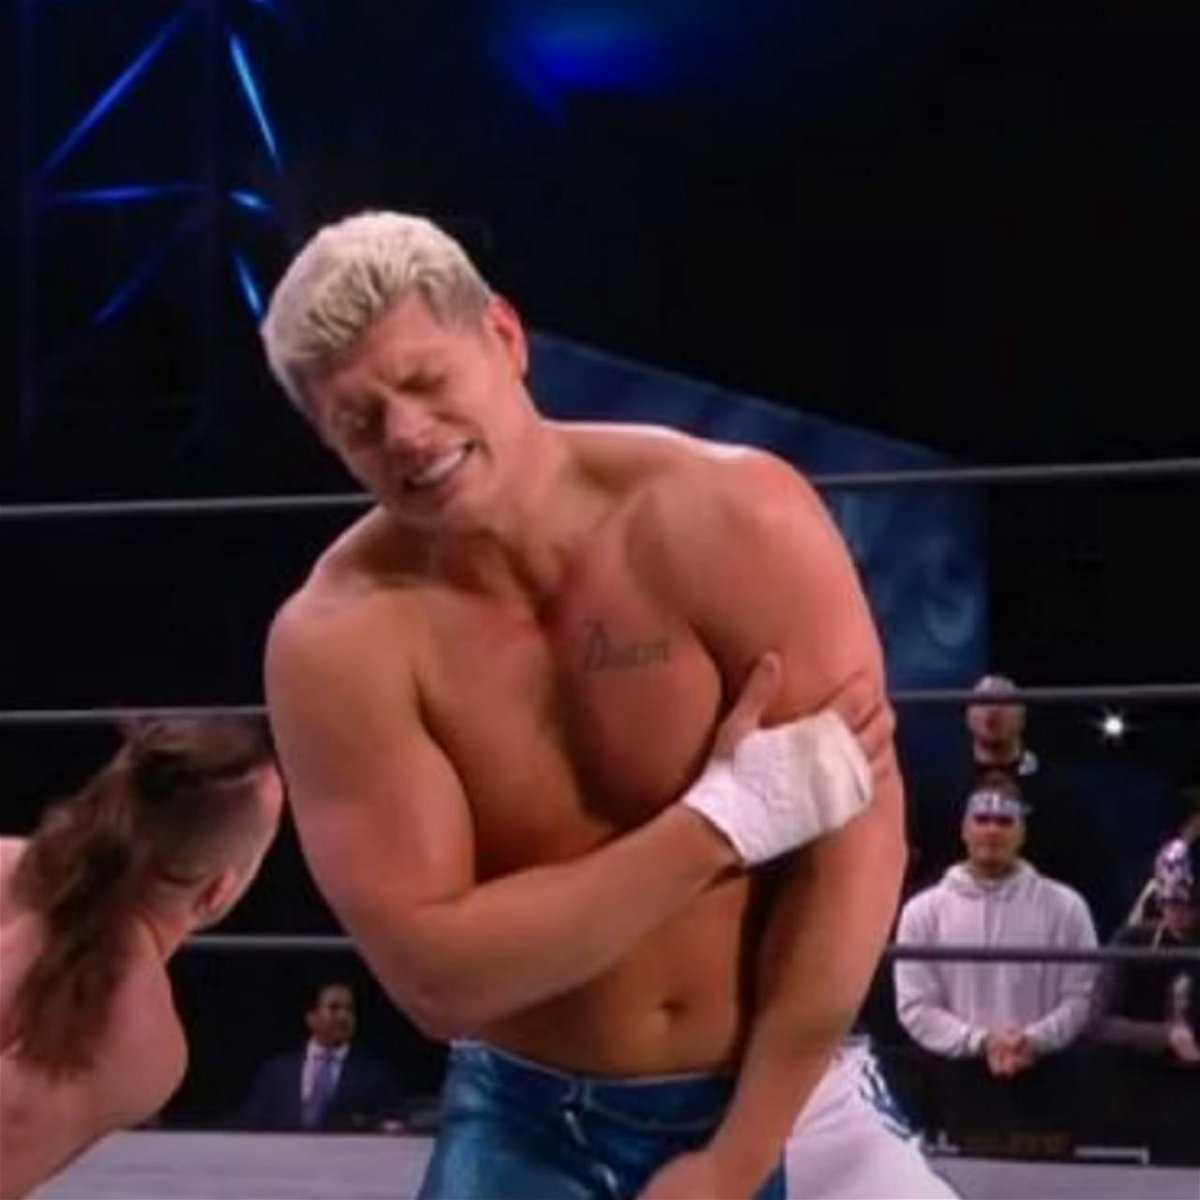 "Ne prenez pas de risque": Cody Rhodes se battra malgré une blessure brutale, les fans de la WWE expriment leur inquiétude